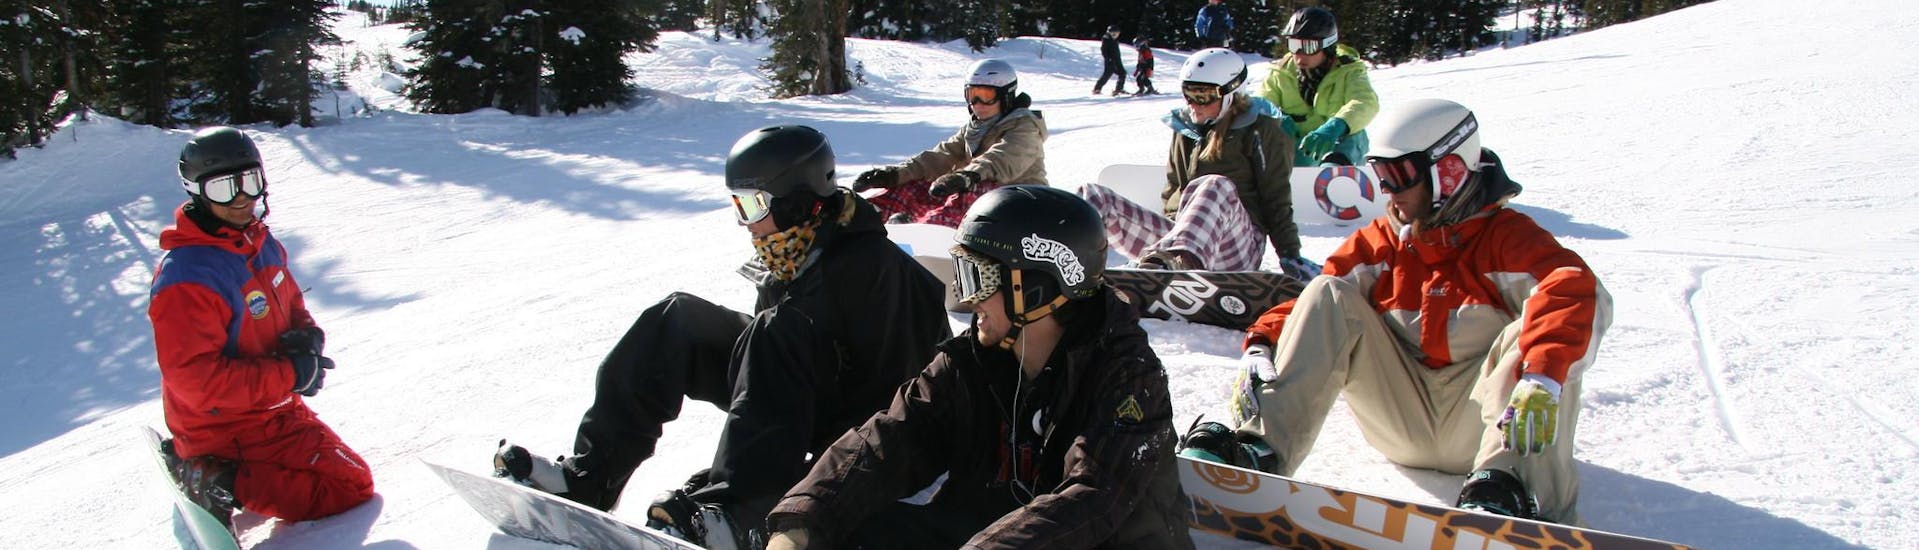 Un groupe de snowboardeurs s'amuse ensemble pendant un cours de snowboard pour débutants